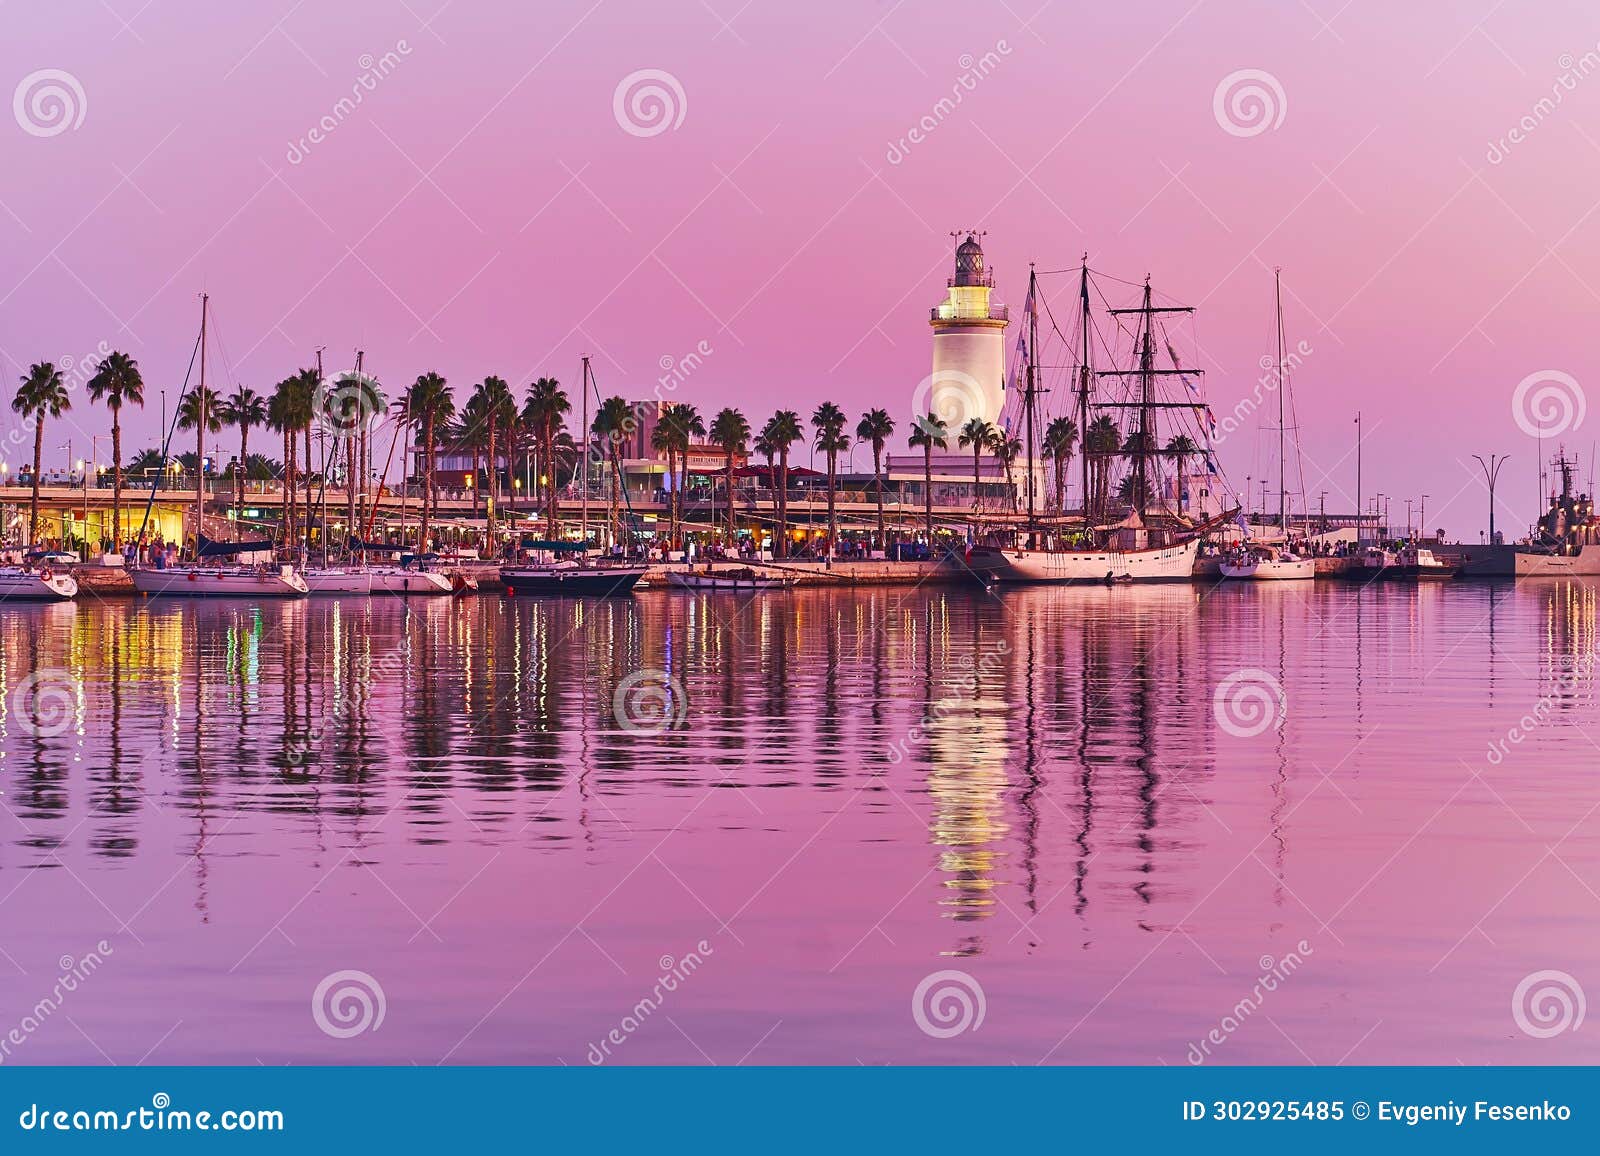 la farola lighthouse on twilight, malaga port, spain